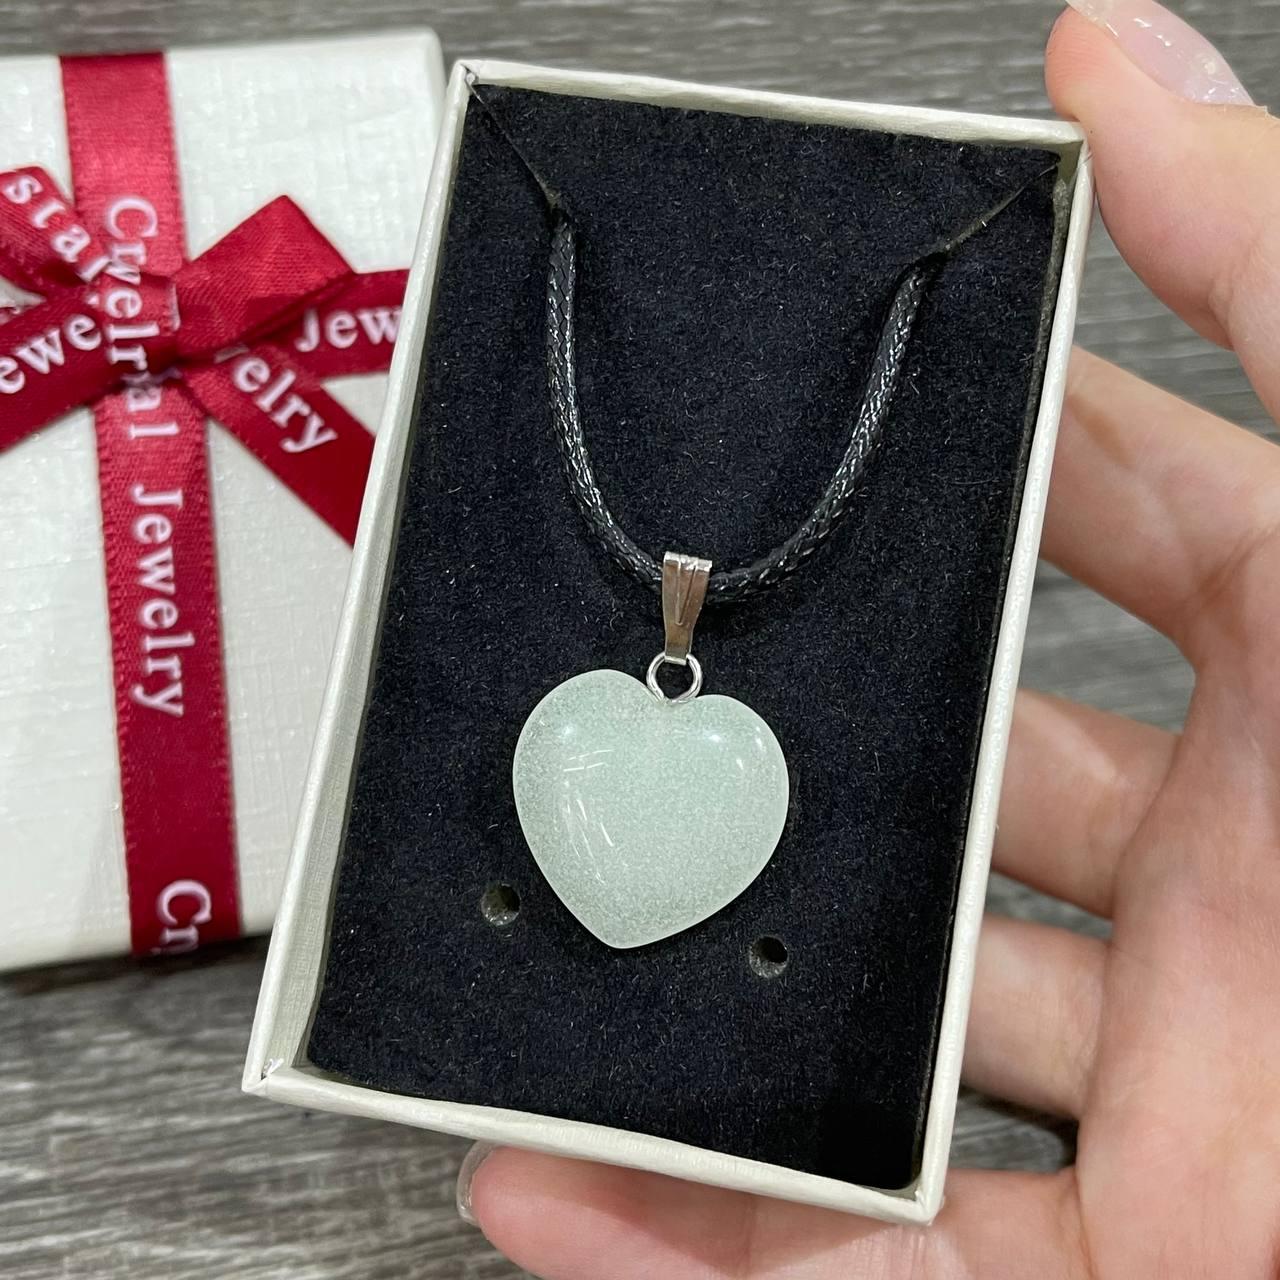 Оригінальний подарунок дівчині - кулон з натурального каменю Онікс у формі сердечка на шнурочку в коробочці